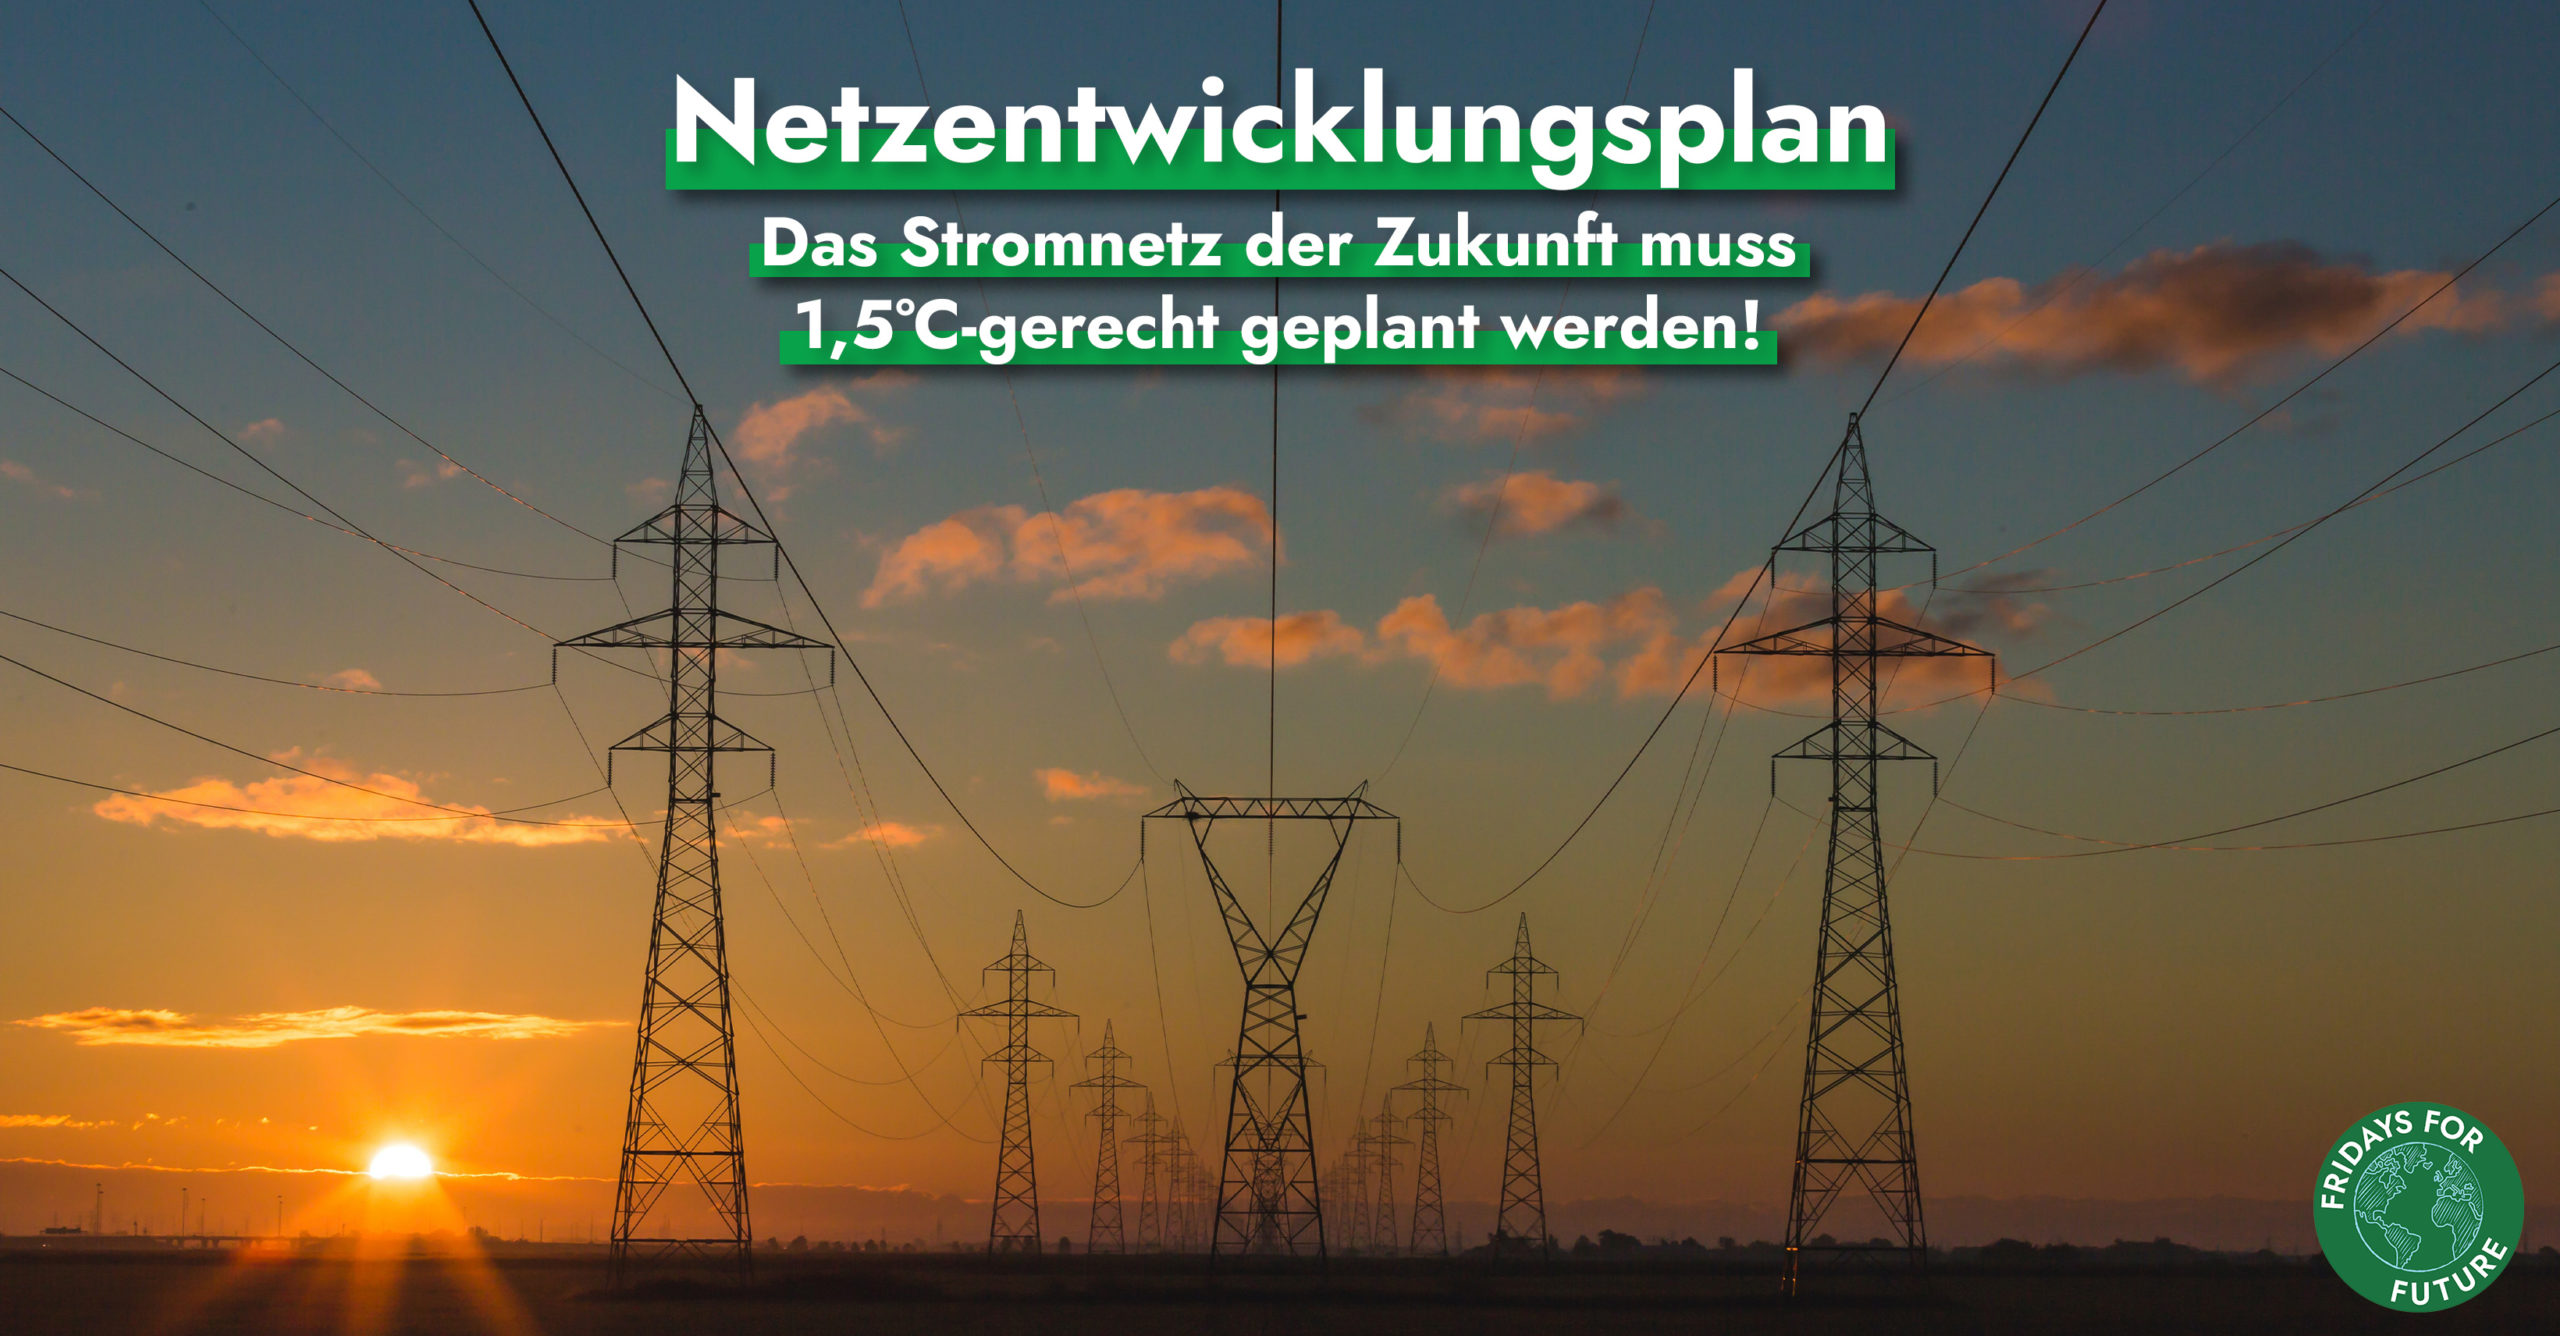 Der Netzentwicklungsplan – Das Stromnetz der Zukunft muss 1,5°C-gerecht geplant werden!